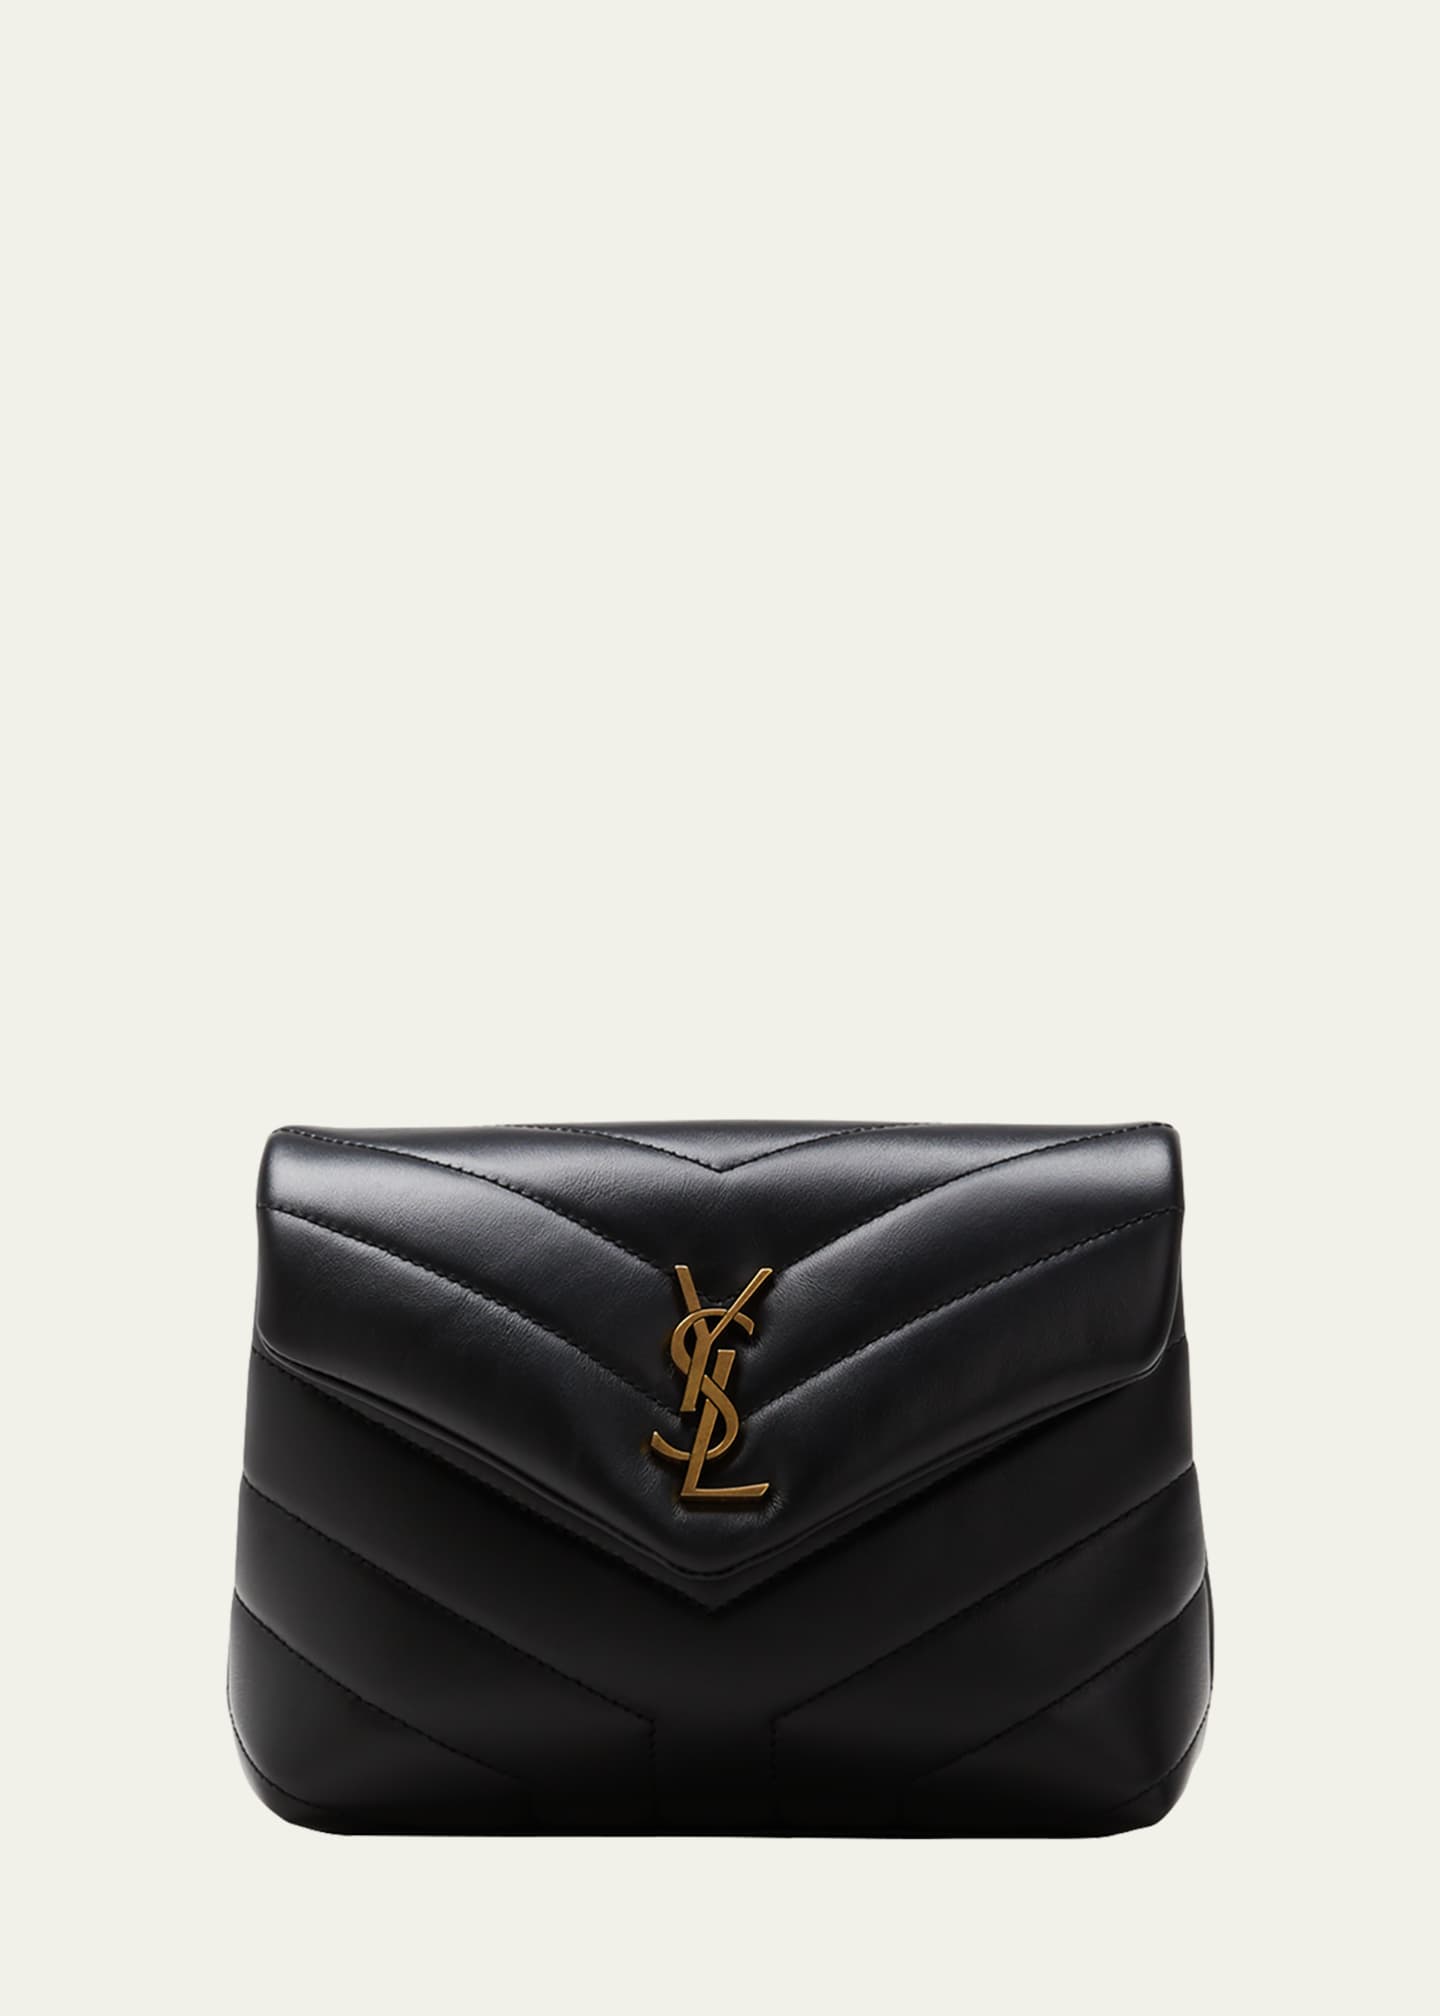 Saint Laurent - Authenticated Loulou Handbag - Leather Black Plain for Women, Never Worn